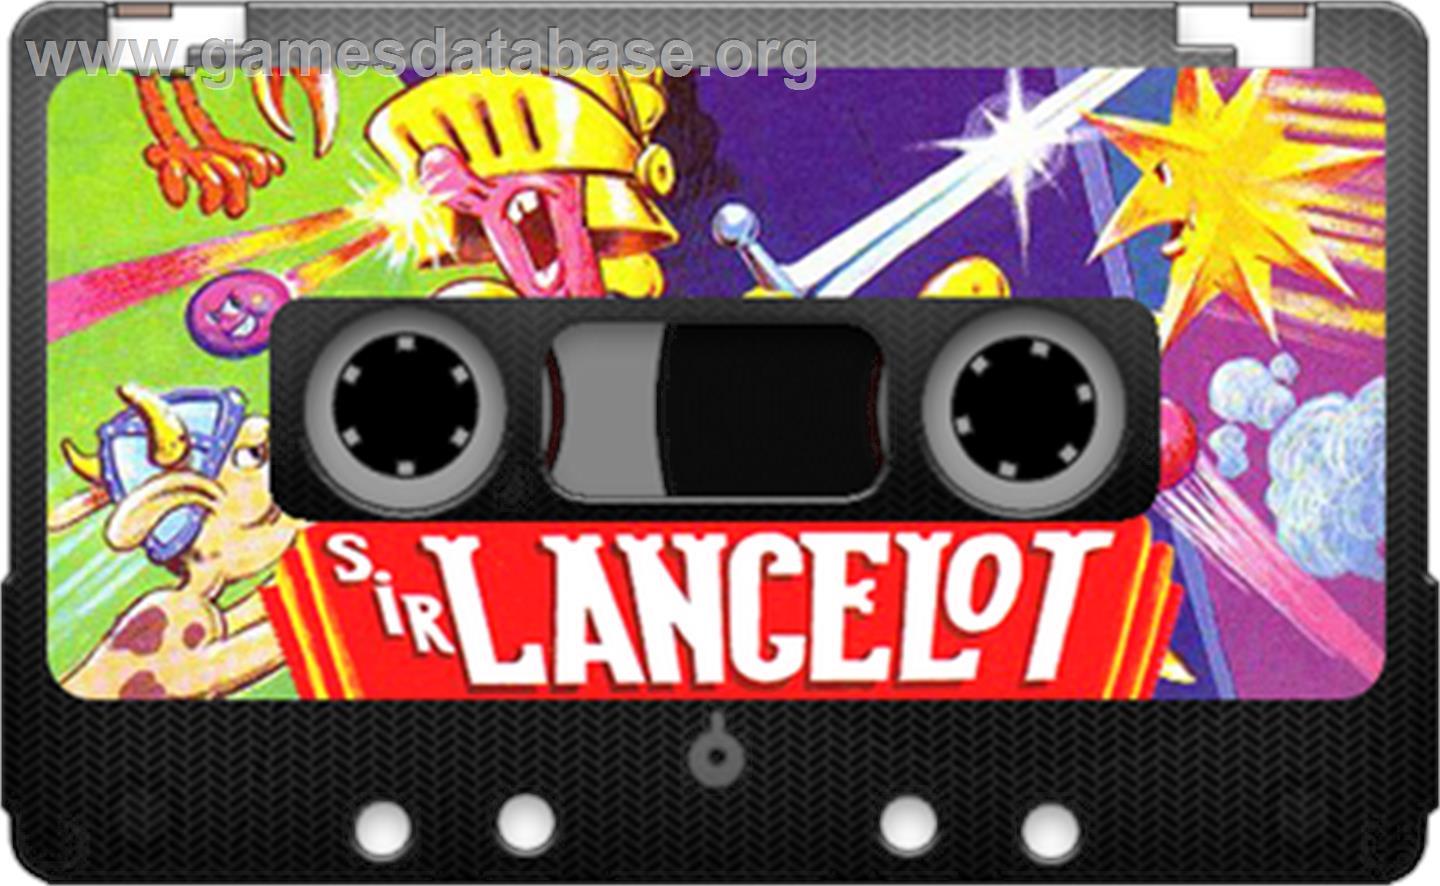 Sir Lancelot - Sinclair ZX Spectrum - Artwork - Cartridge